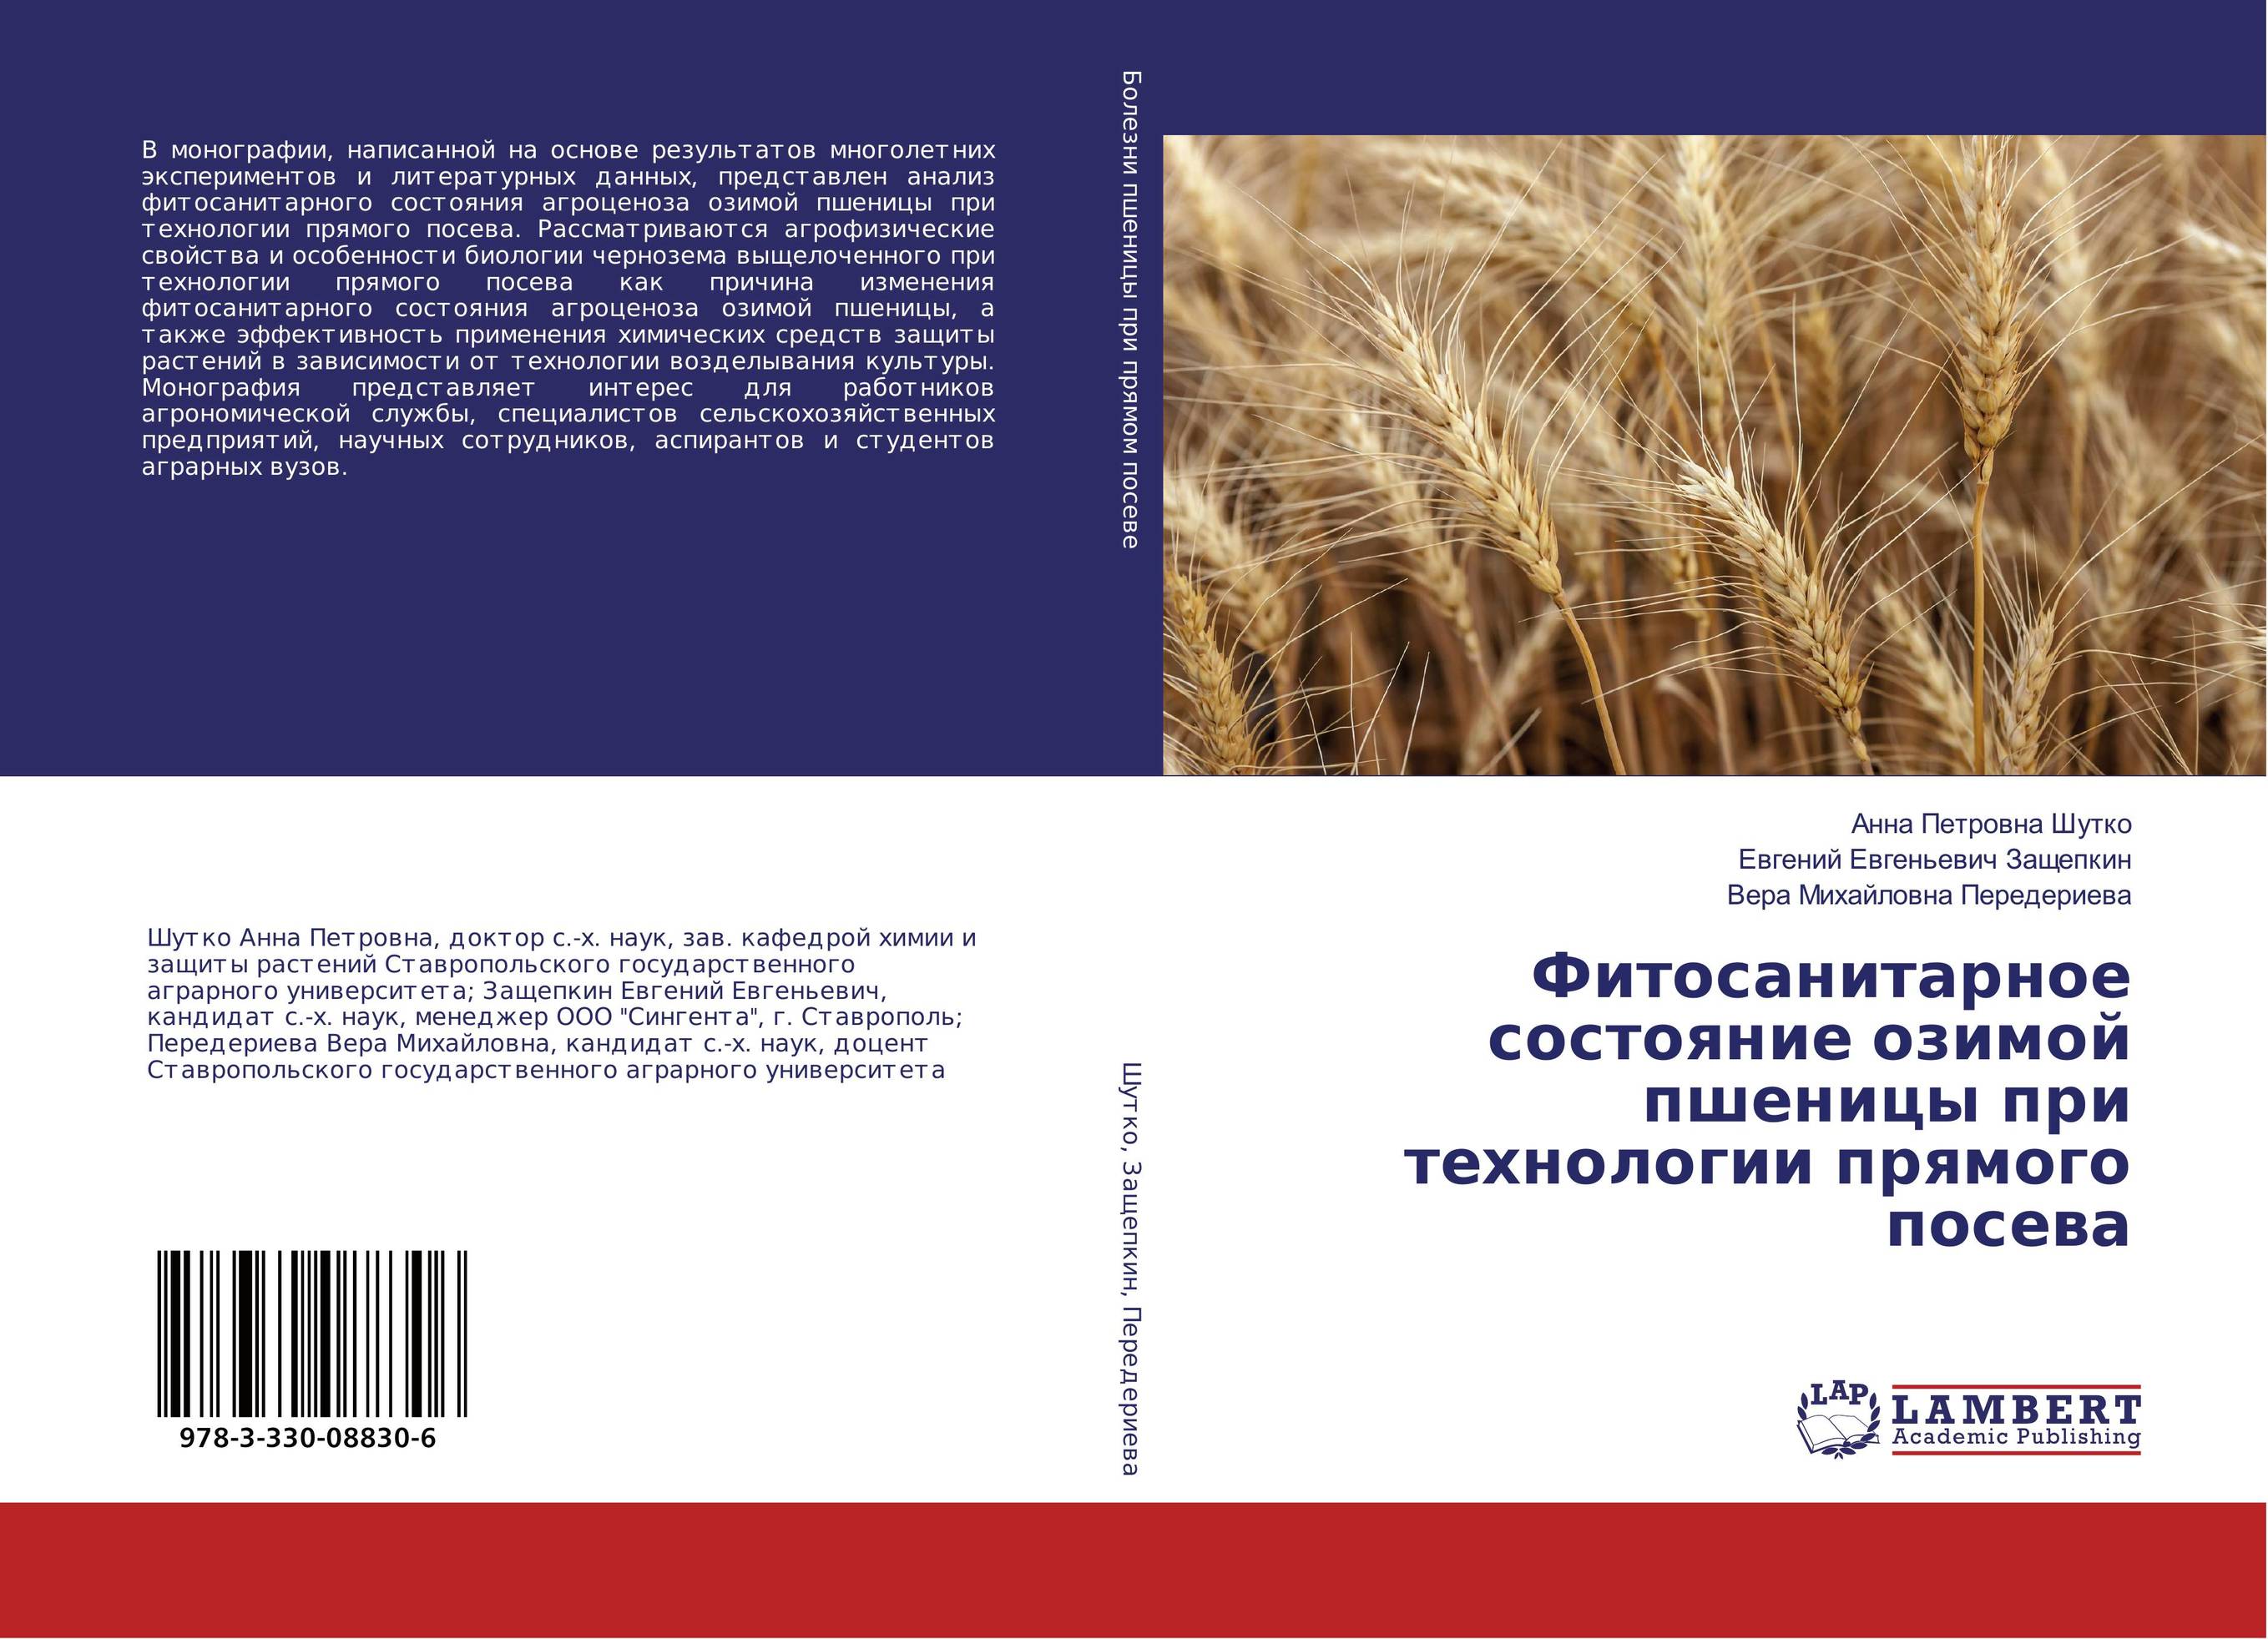 
        Фитосанитарное состояние озимой пшеницы при технологии прямого посева..
      